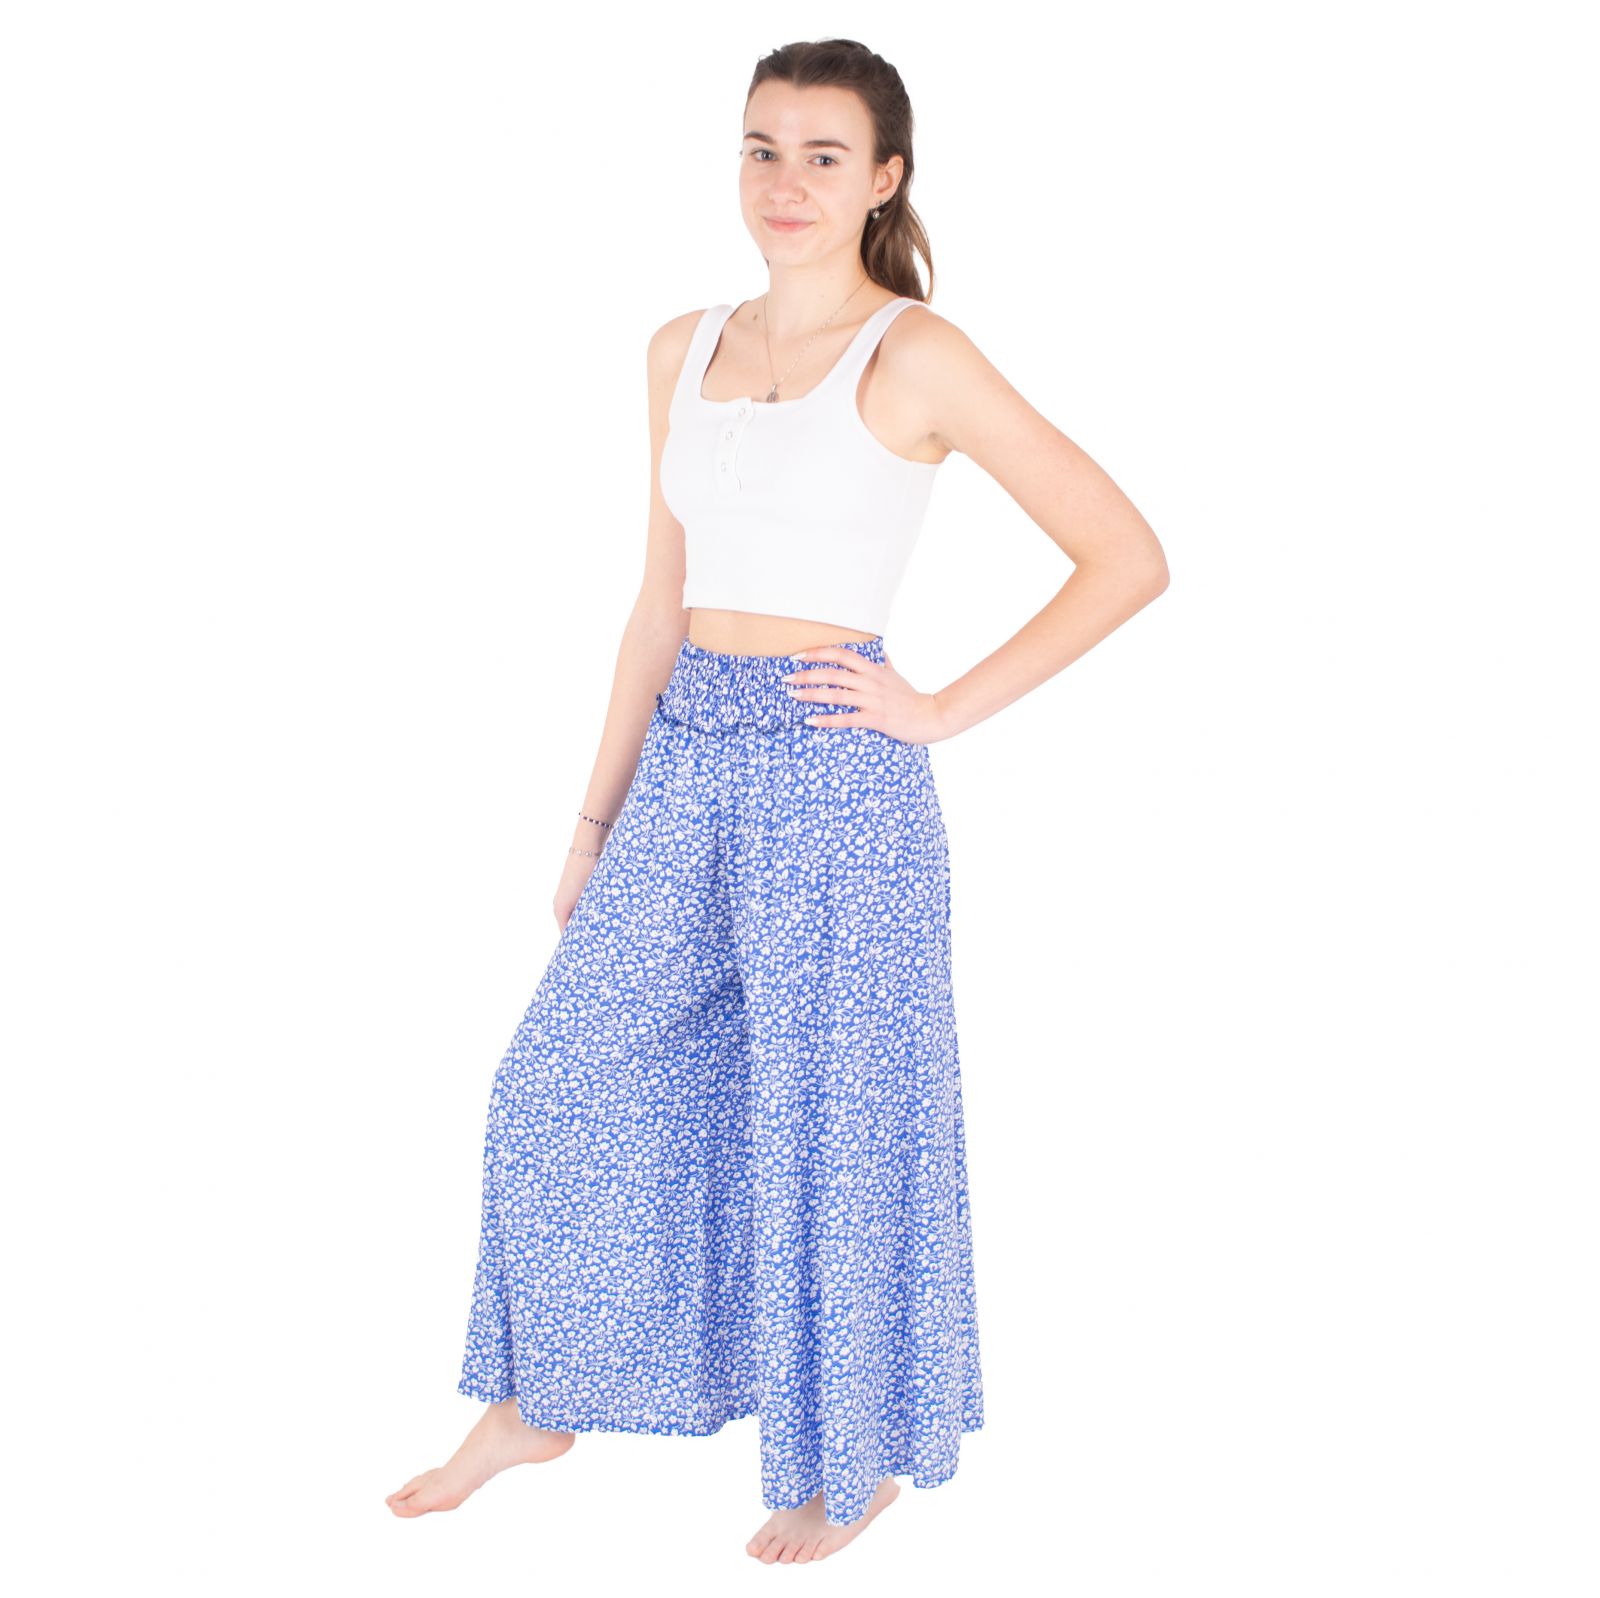 Blue trouser skirt / culottes Ciara Audrey Thailand